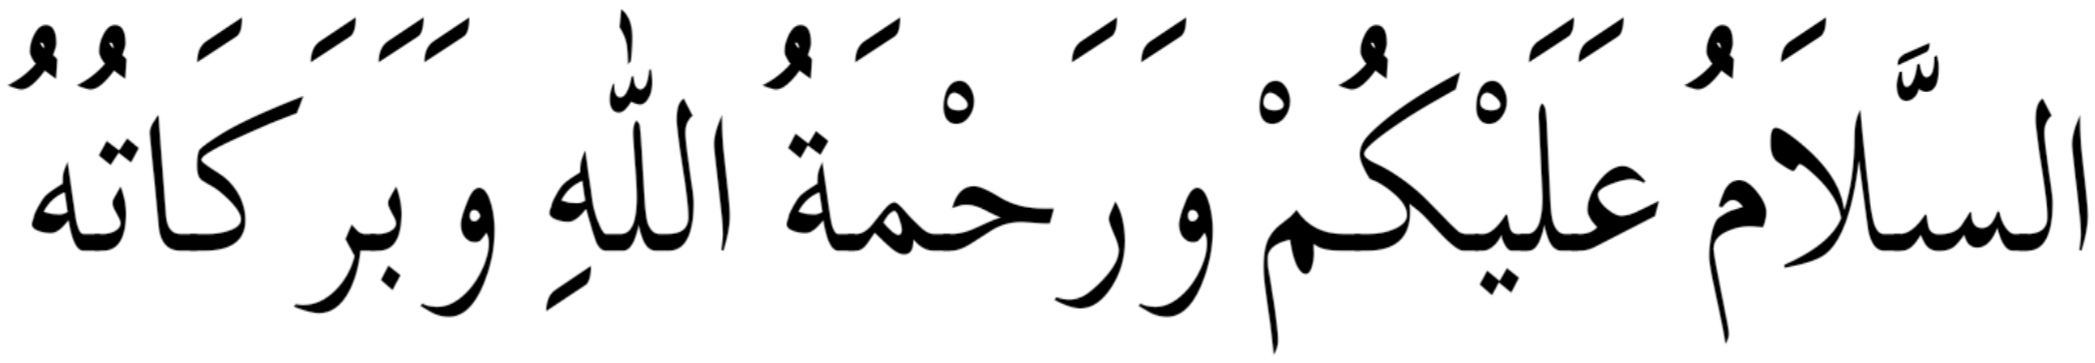 waalaikumussalam tulisan arab